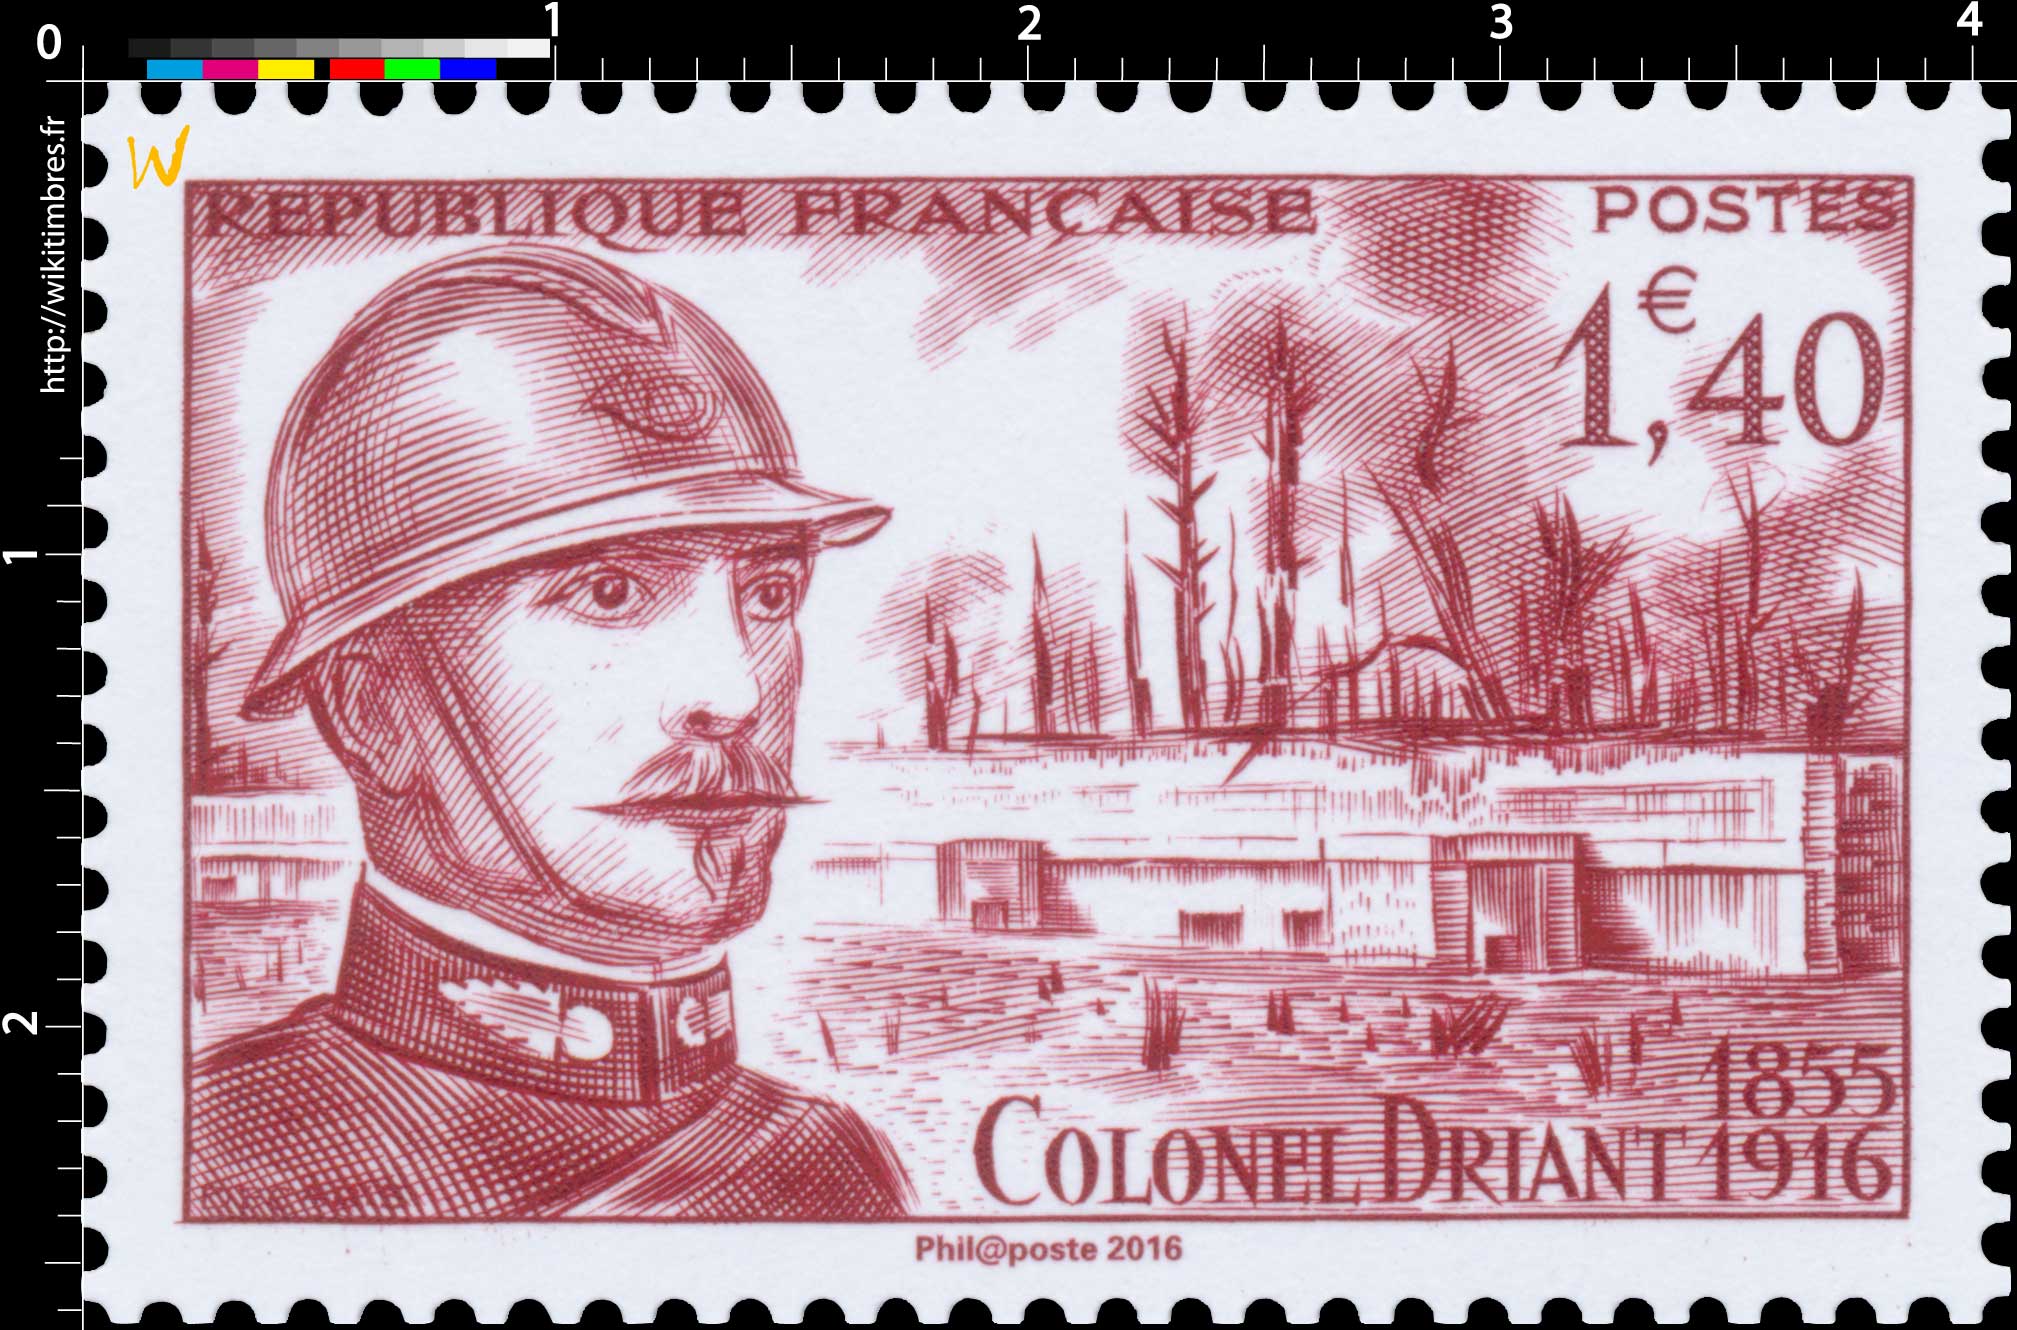 Trésors de la Philatélie 2016 - COLONEL DRIANT 1855-1916